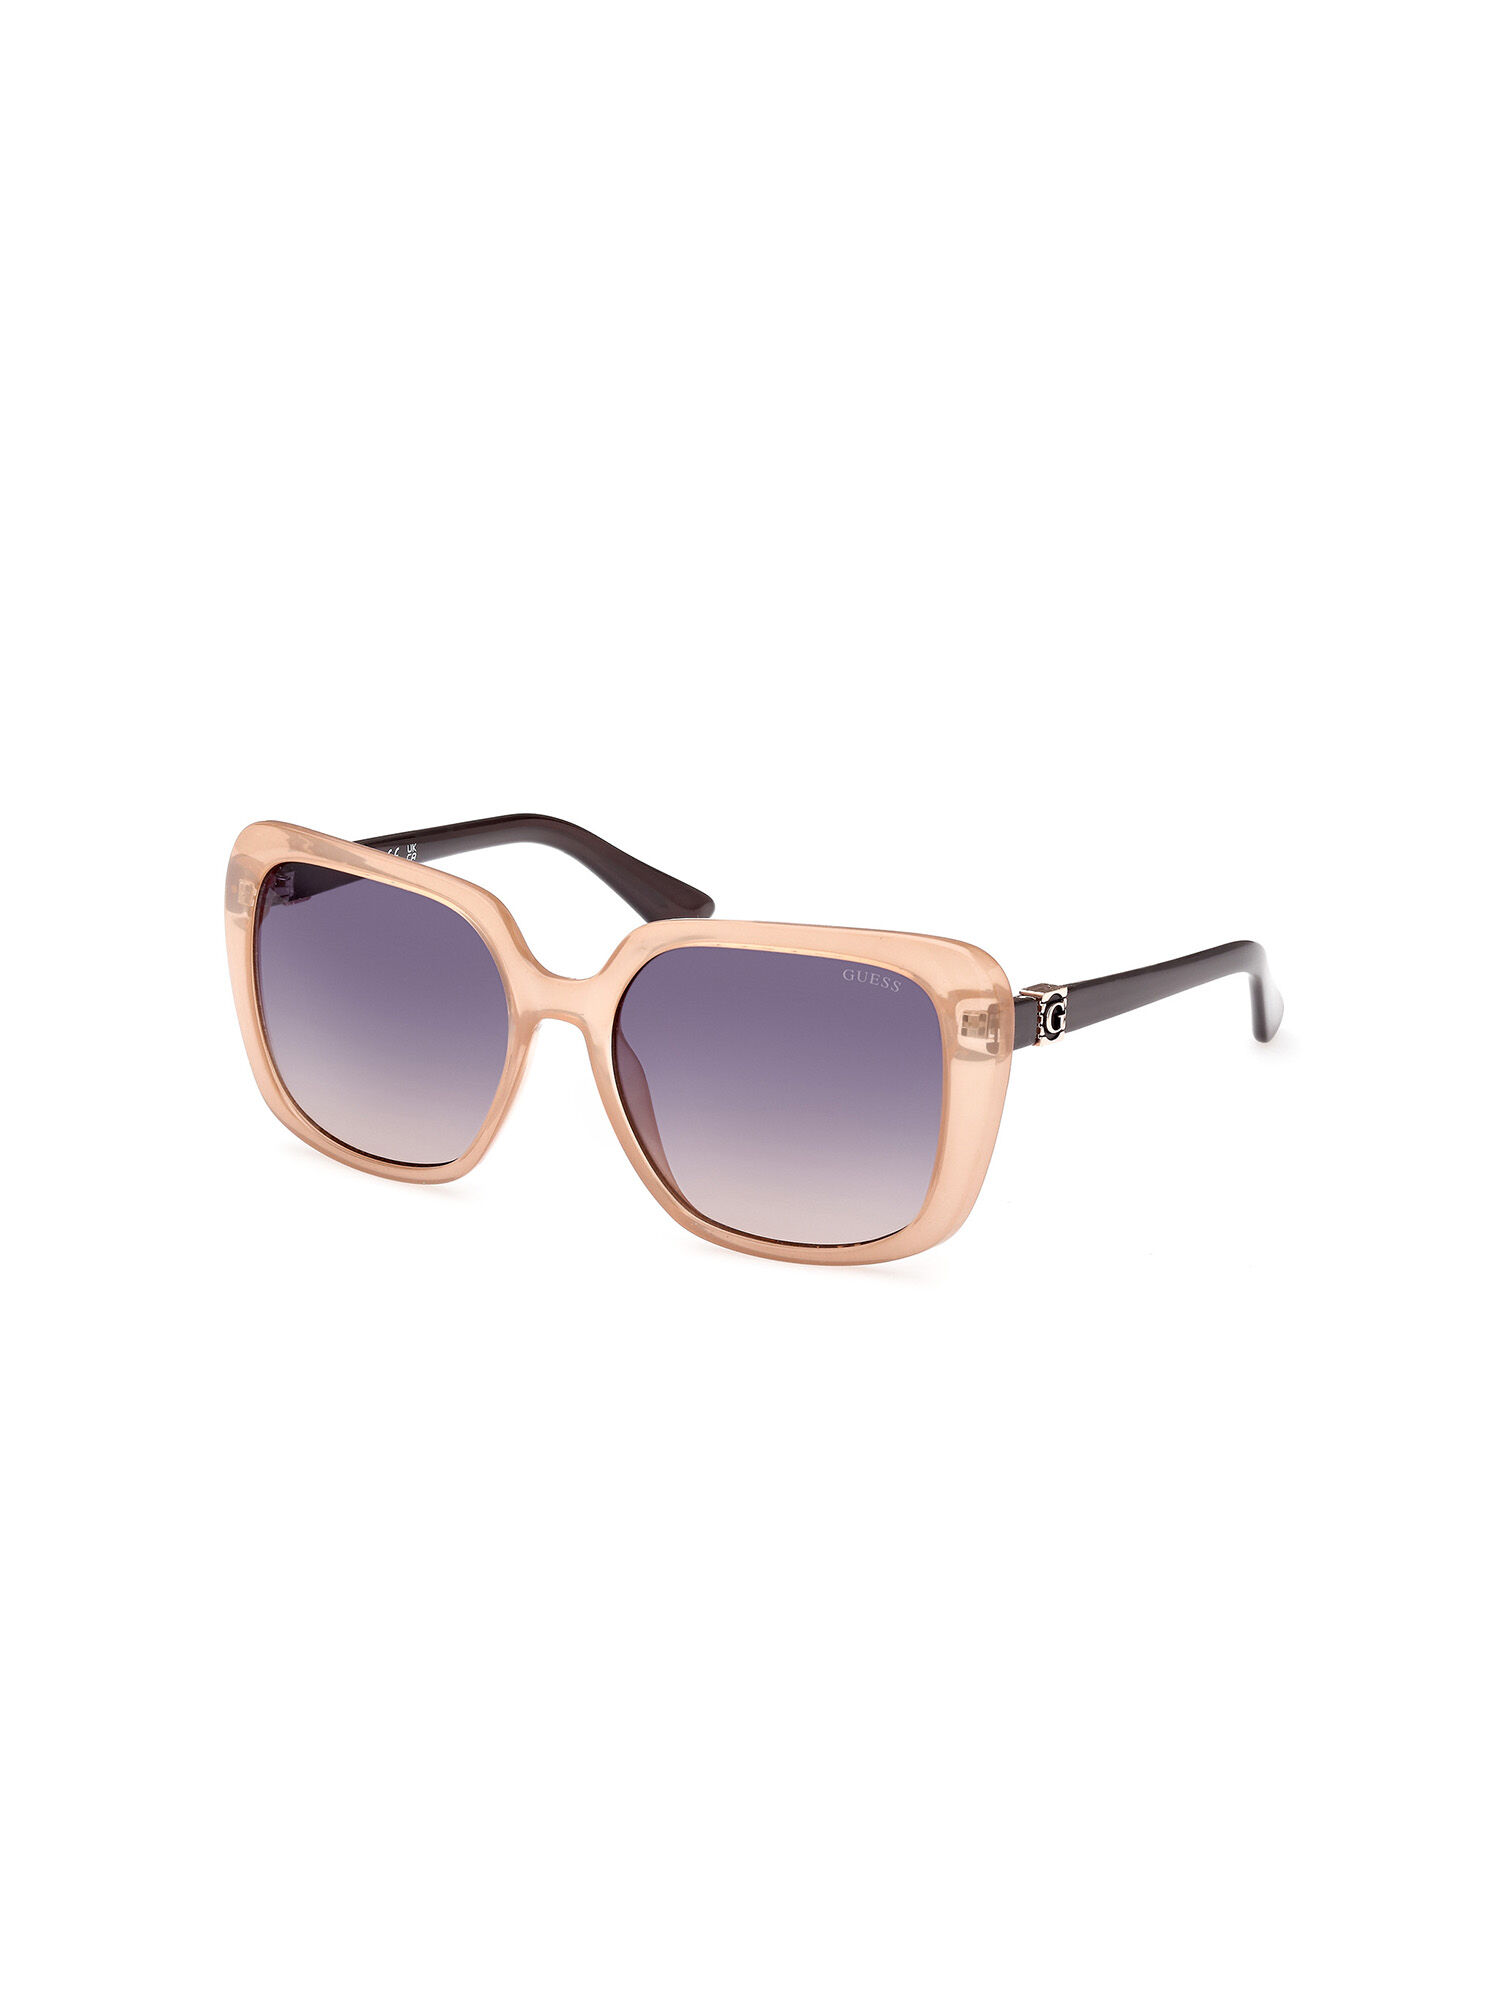 Shop GUESS Online Square Sunglasses